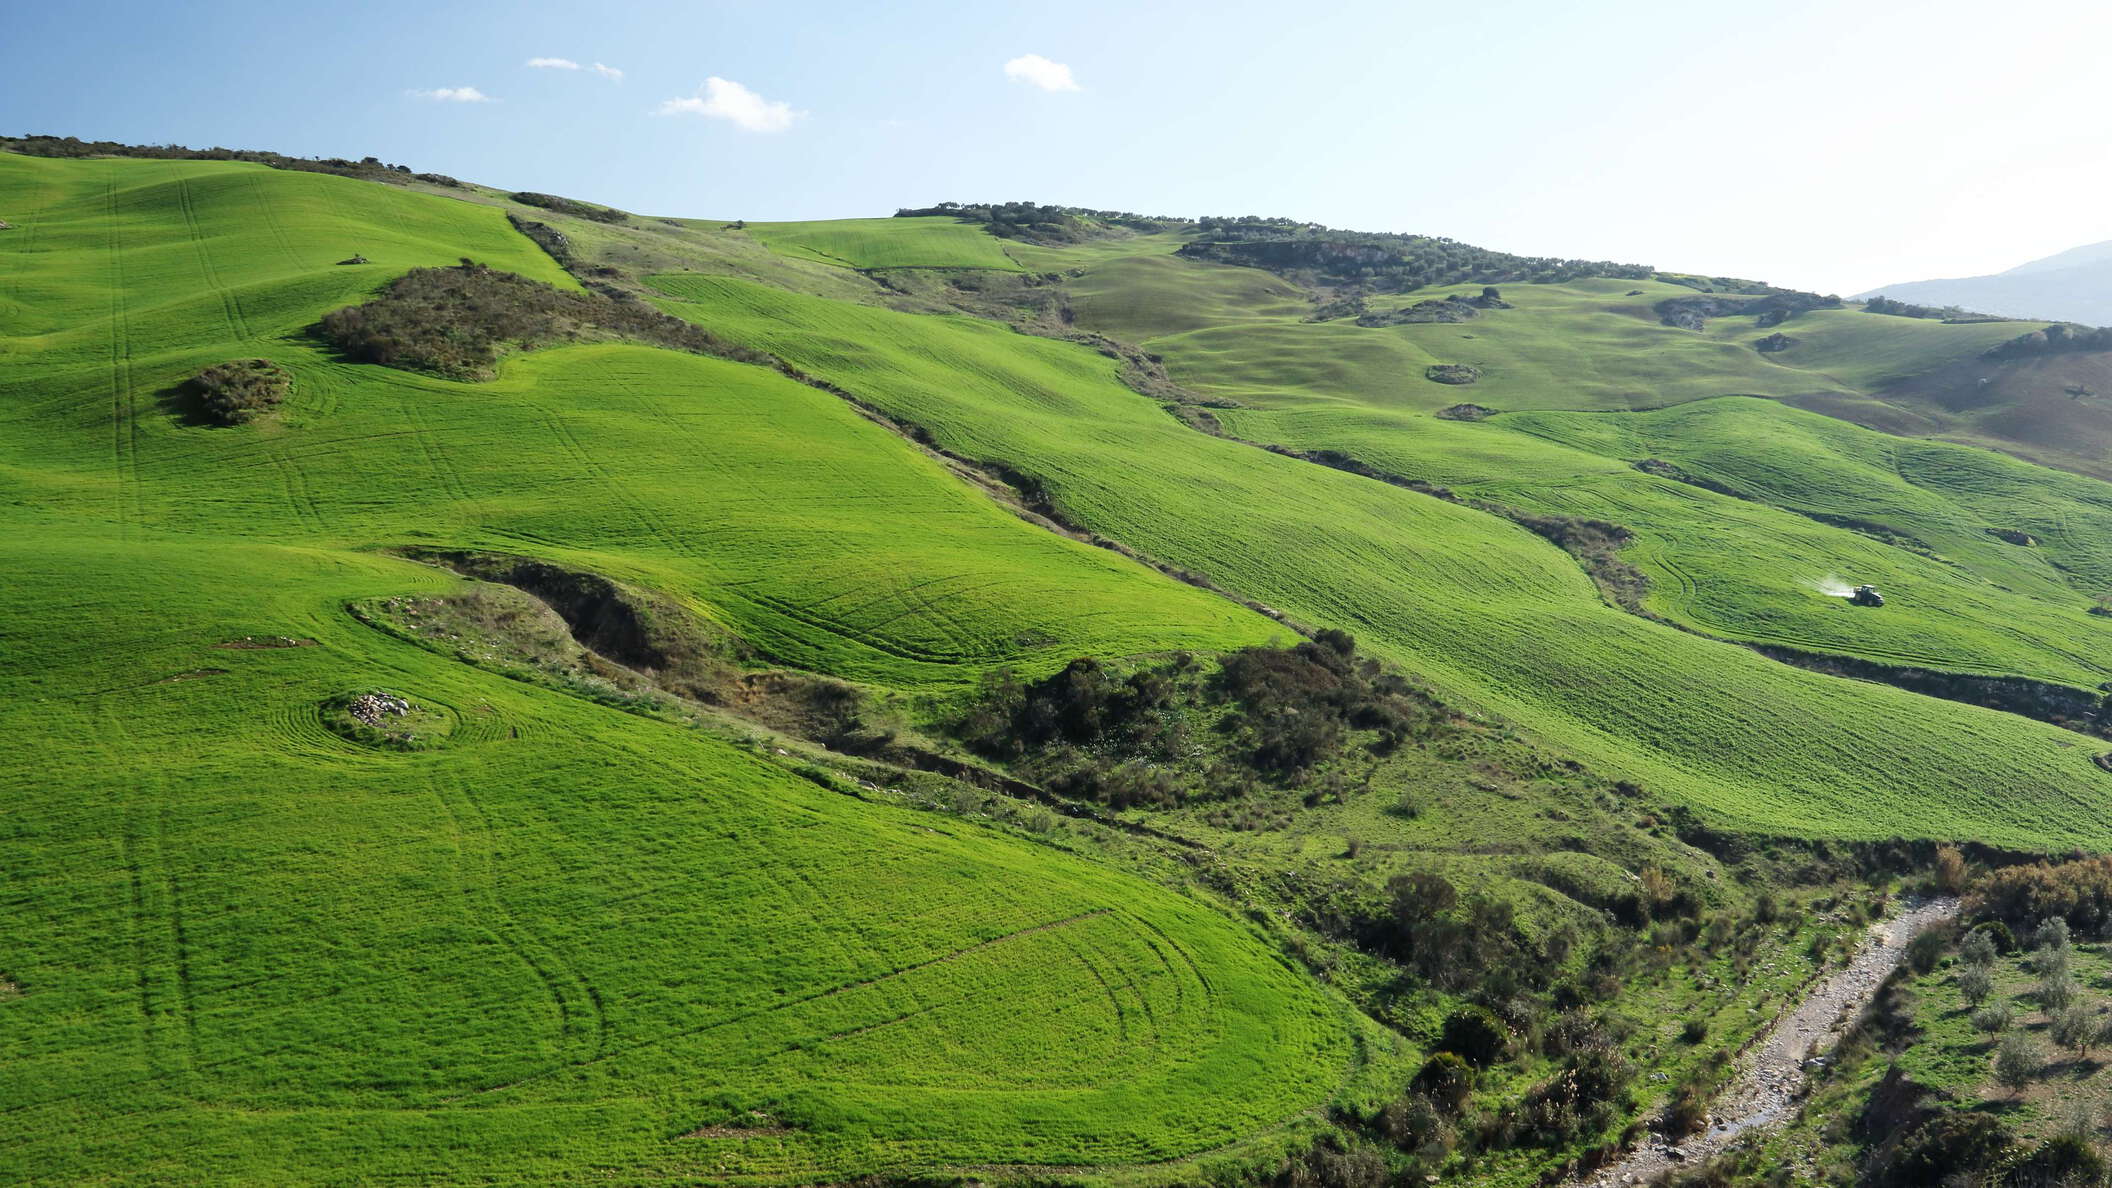 Valle de Abdalajís | Rural landscape